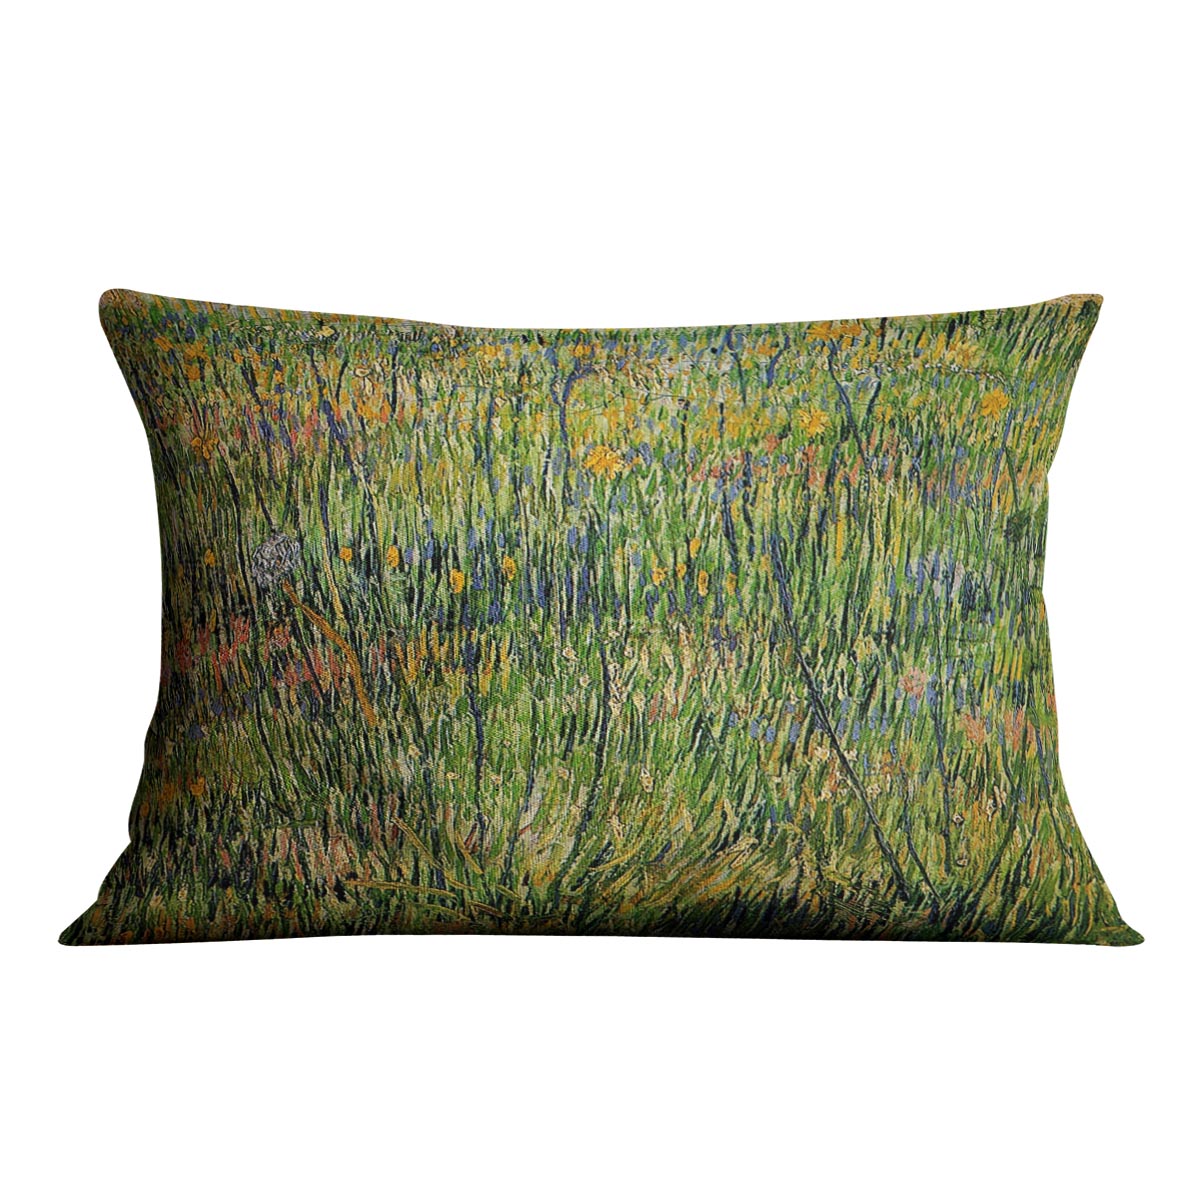 Pasture in Bloom by Van Gogh Cushion